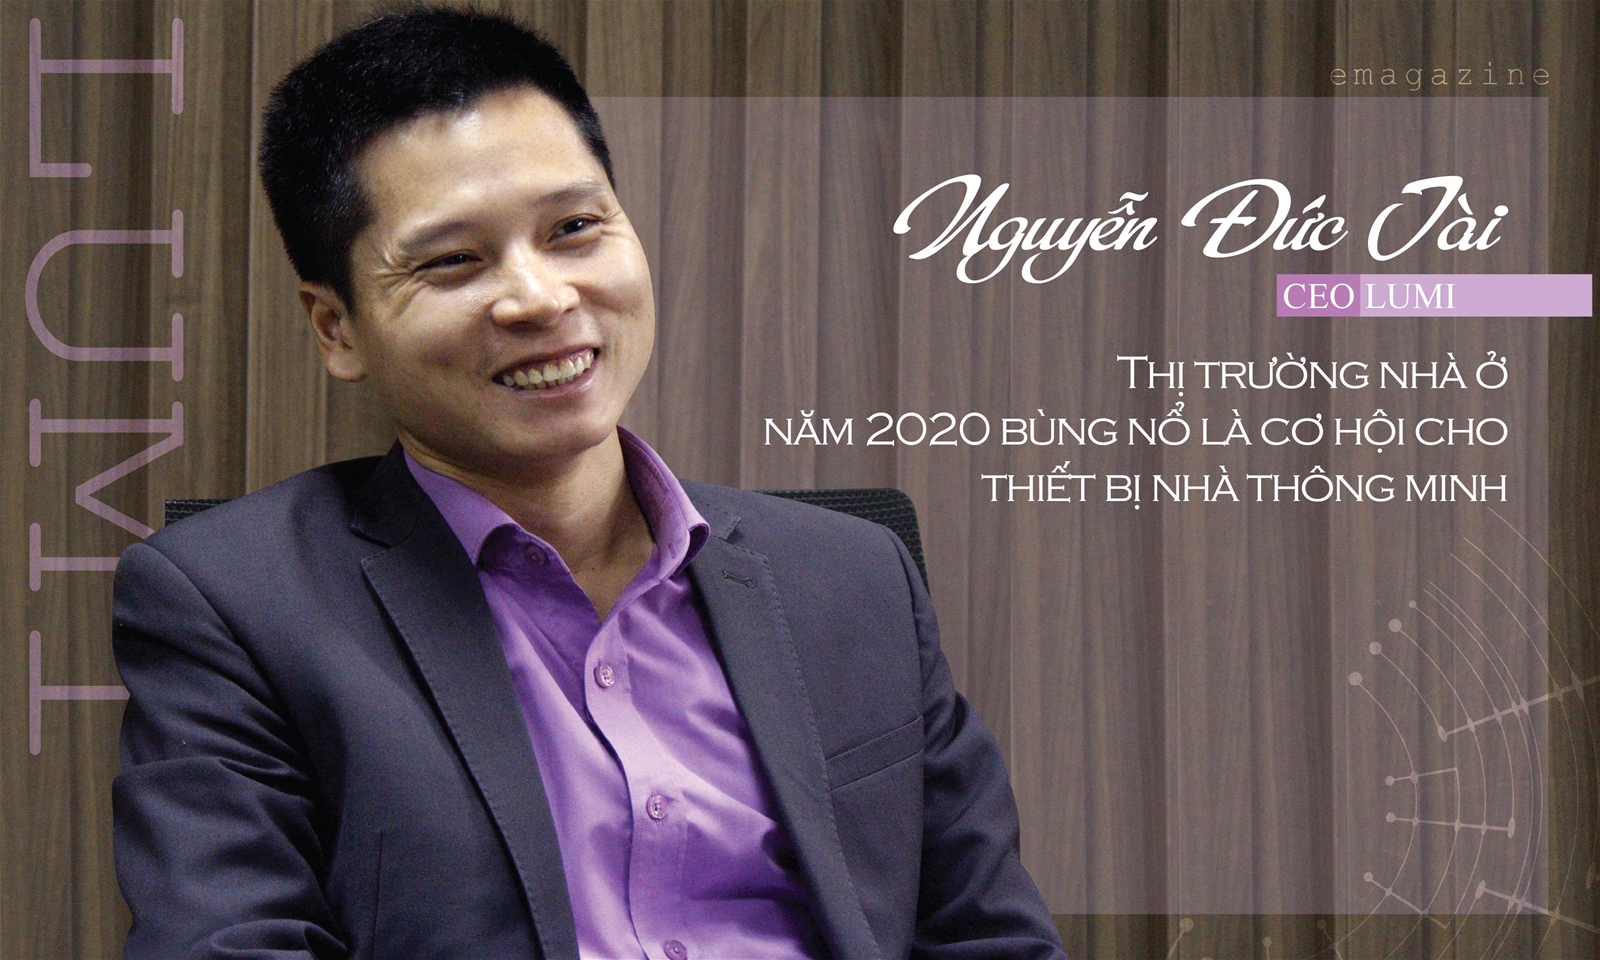 CEO Lumi Nguyễn Đức Tài: "2020 là cơ hội cho thiết bị nhà thông minh"